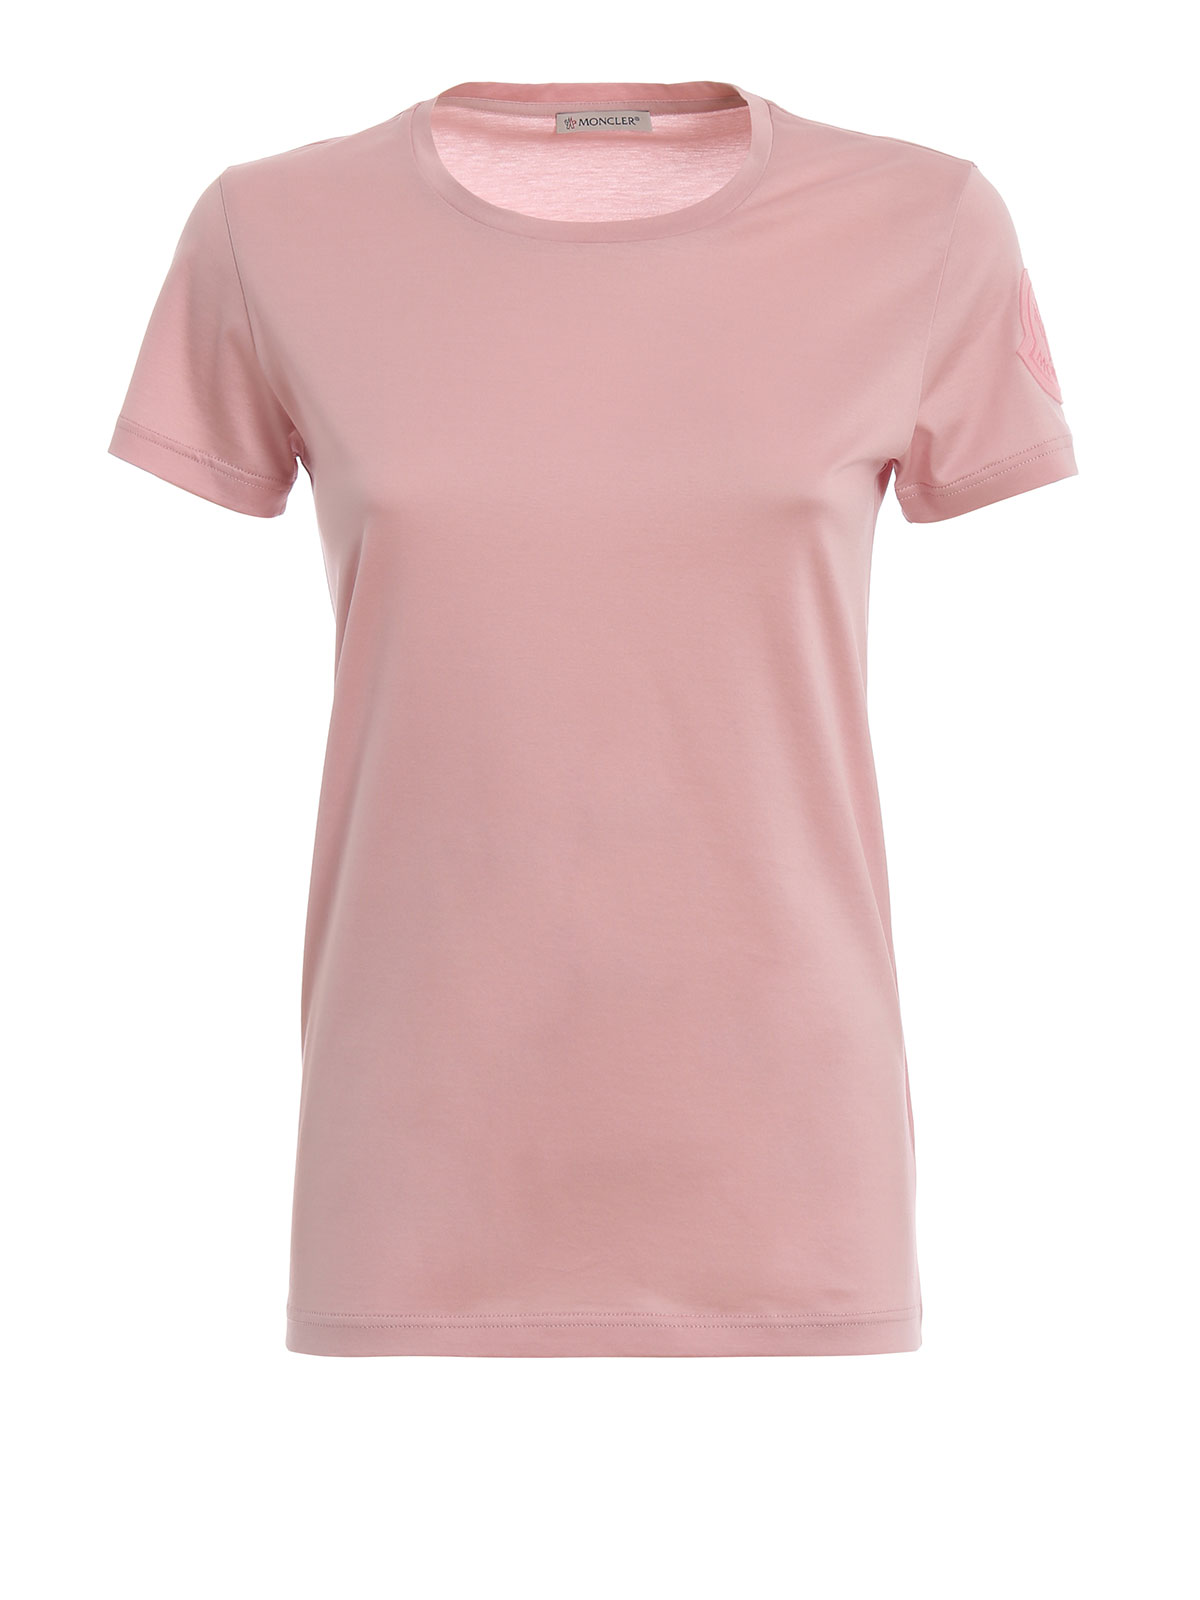 T-shirts Moncler - Light pink cotton basic T-shirt - E10938086261V8002500